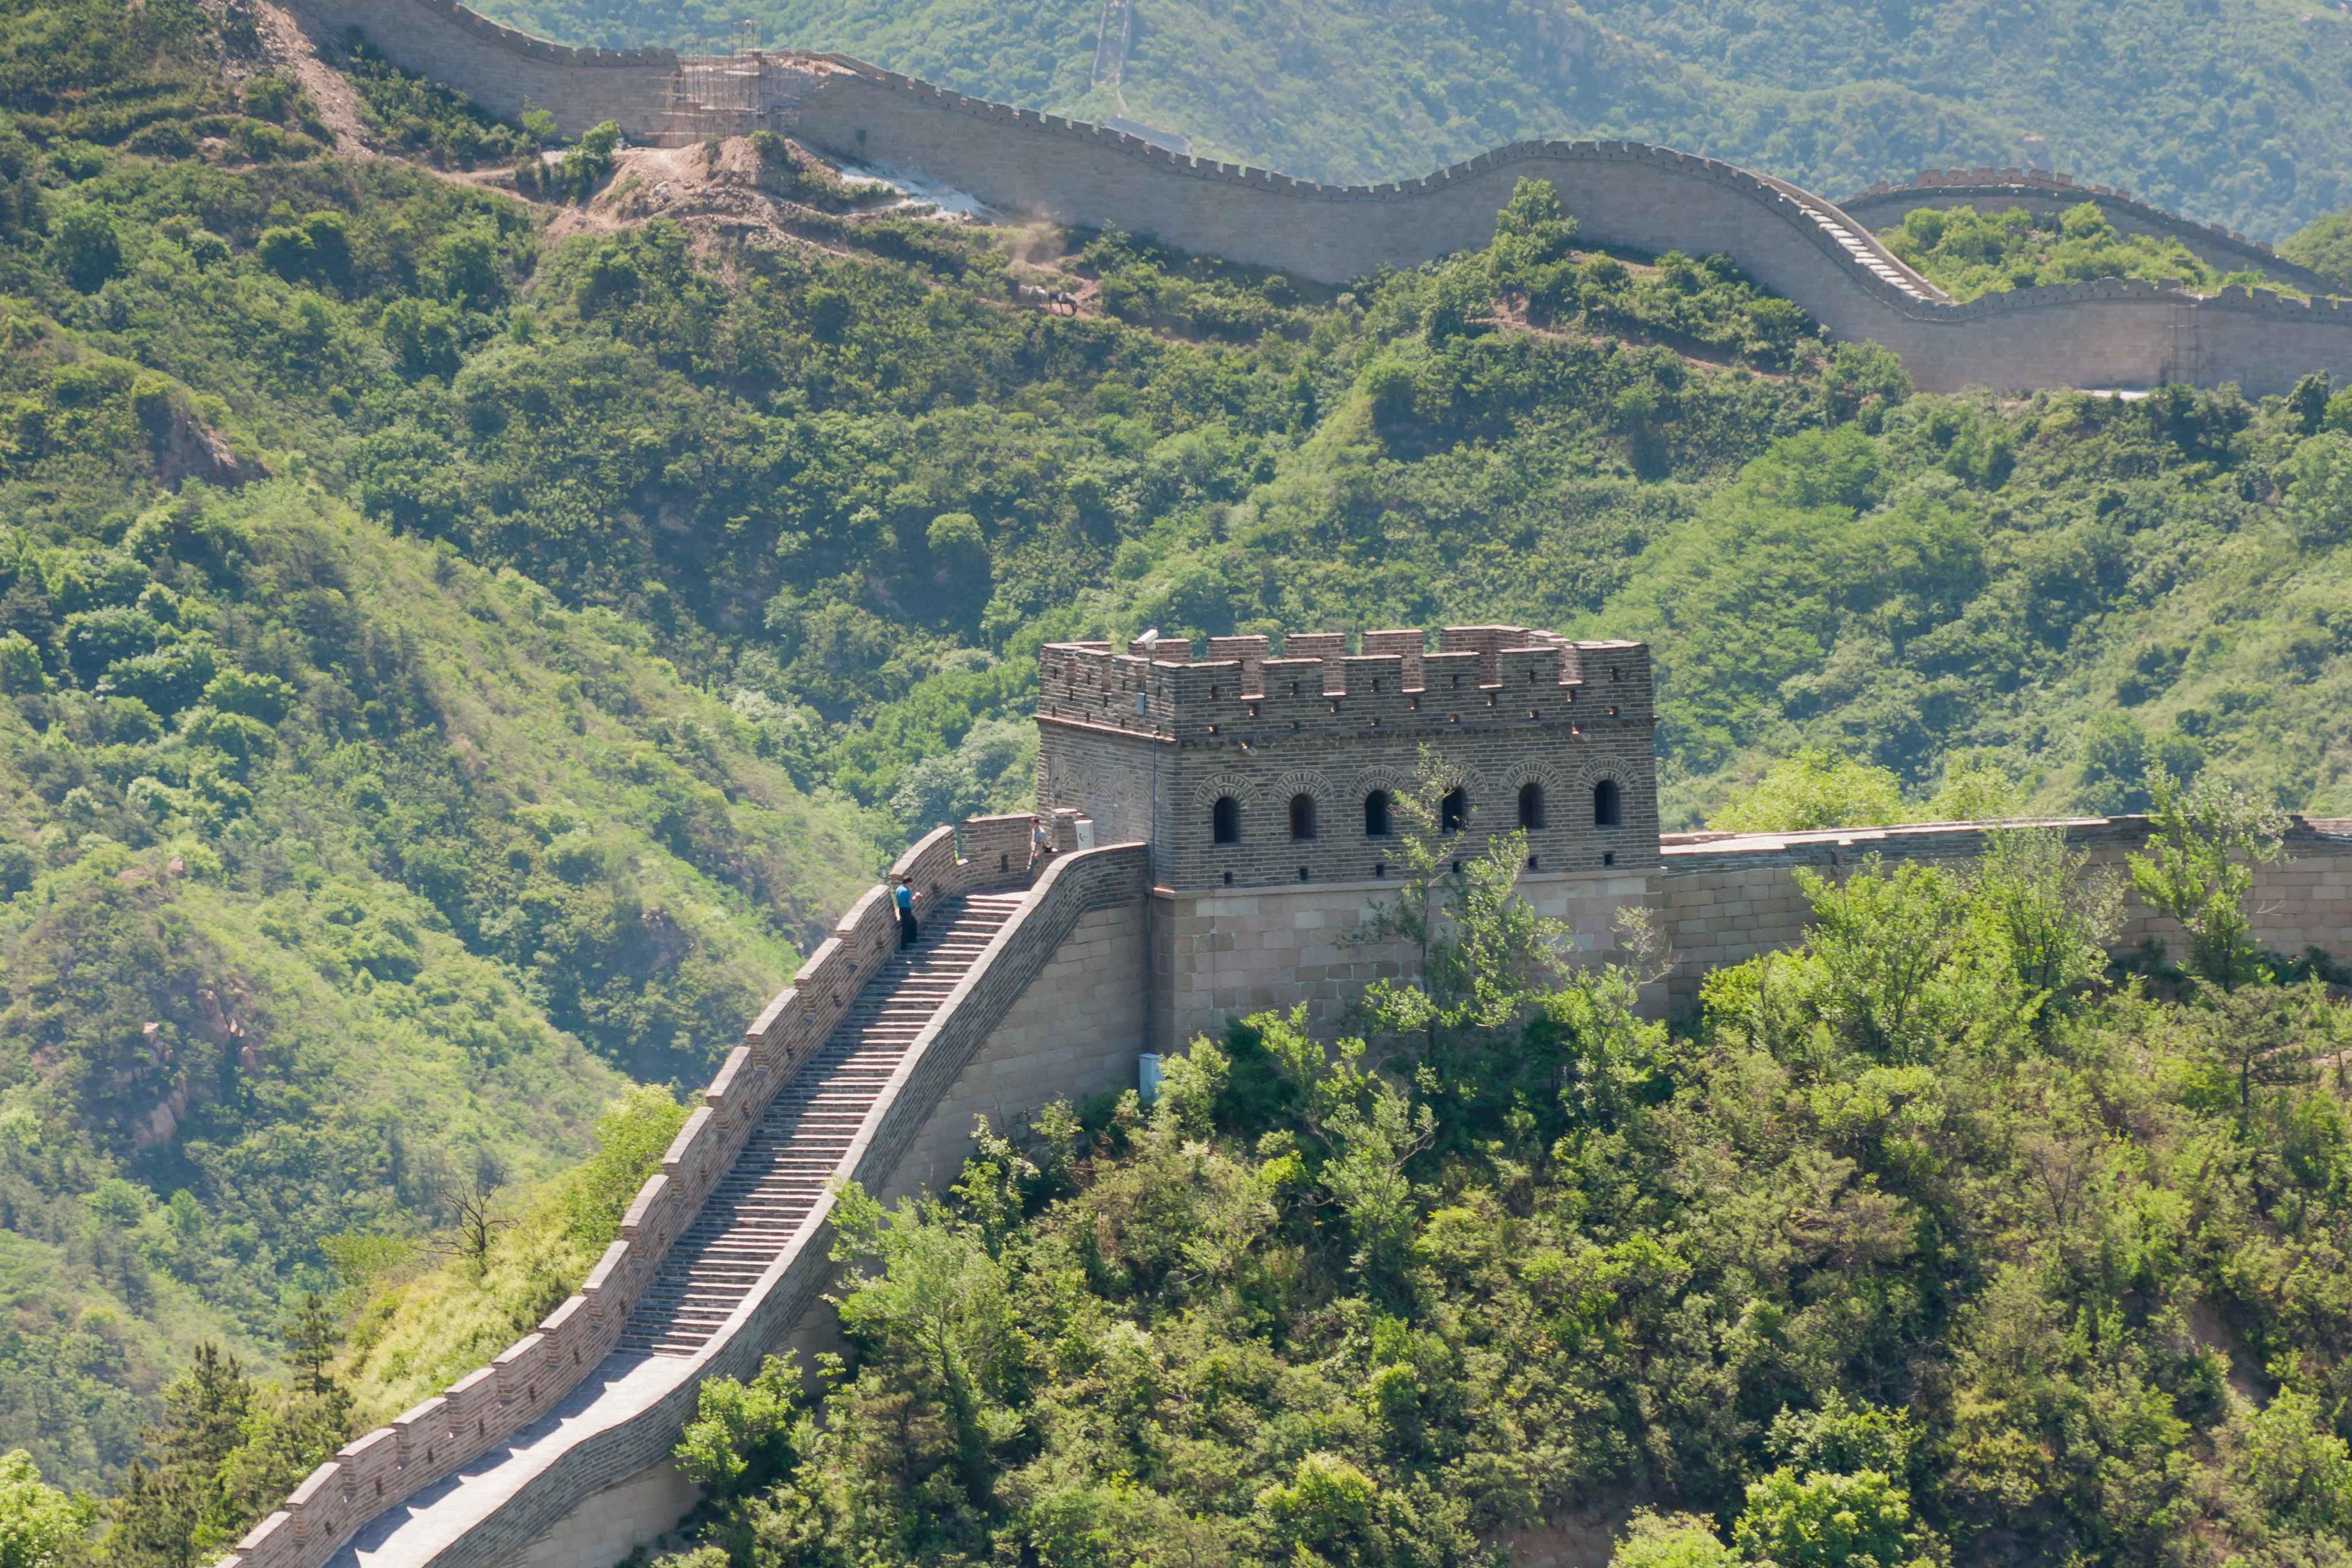 Badaling China Great-Wall-of-China-06